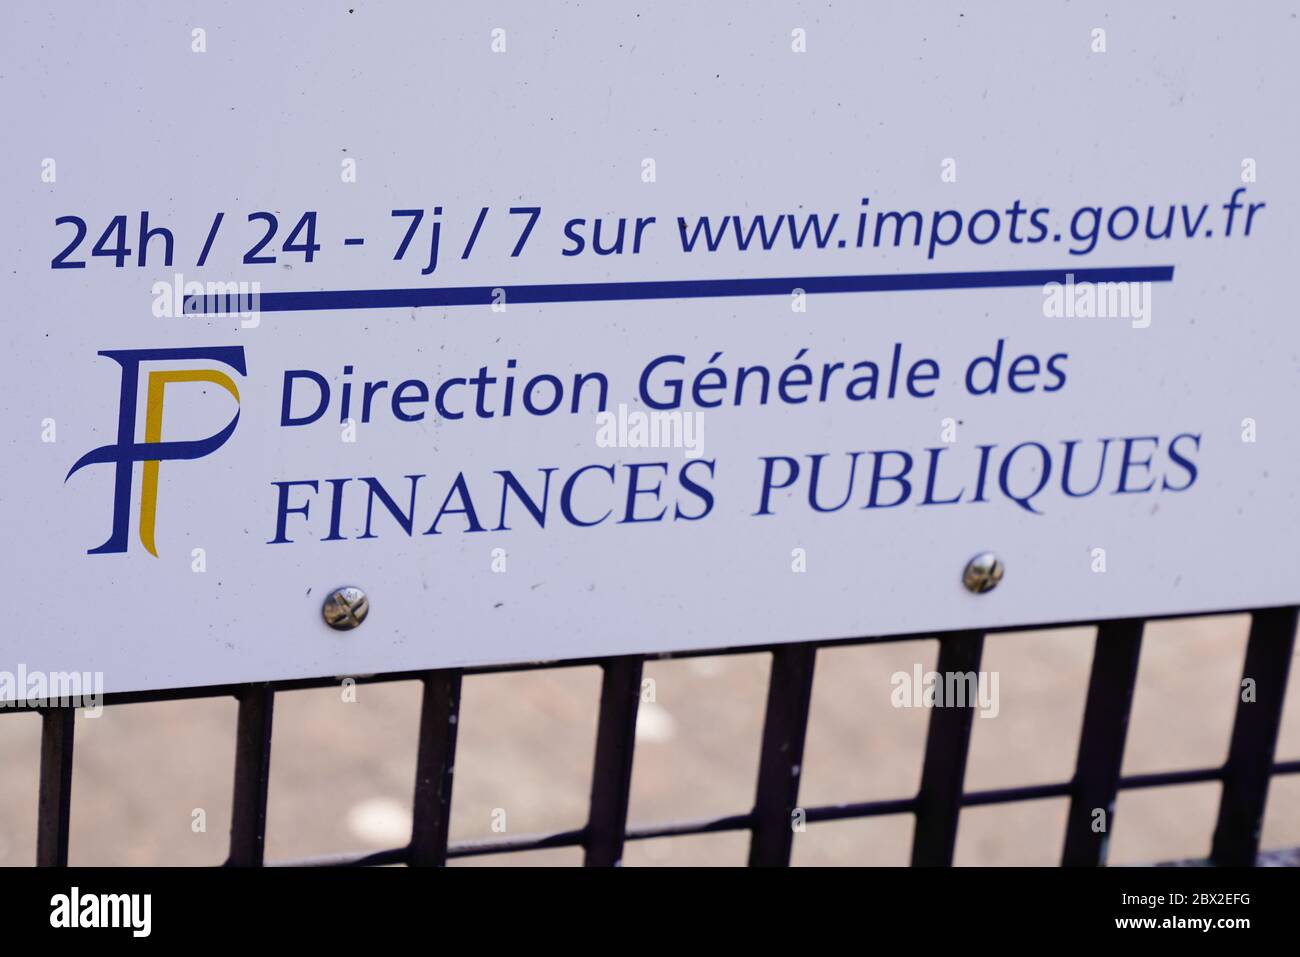 Bordeaux , Aquitaine / France - 06 01 2020 : direction generale des finances publiques logo sign of french taxes office building Stock Photo